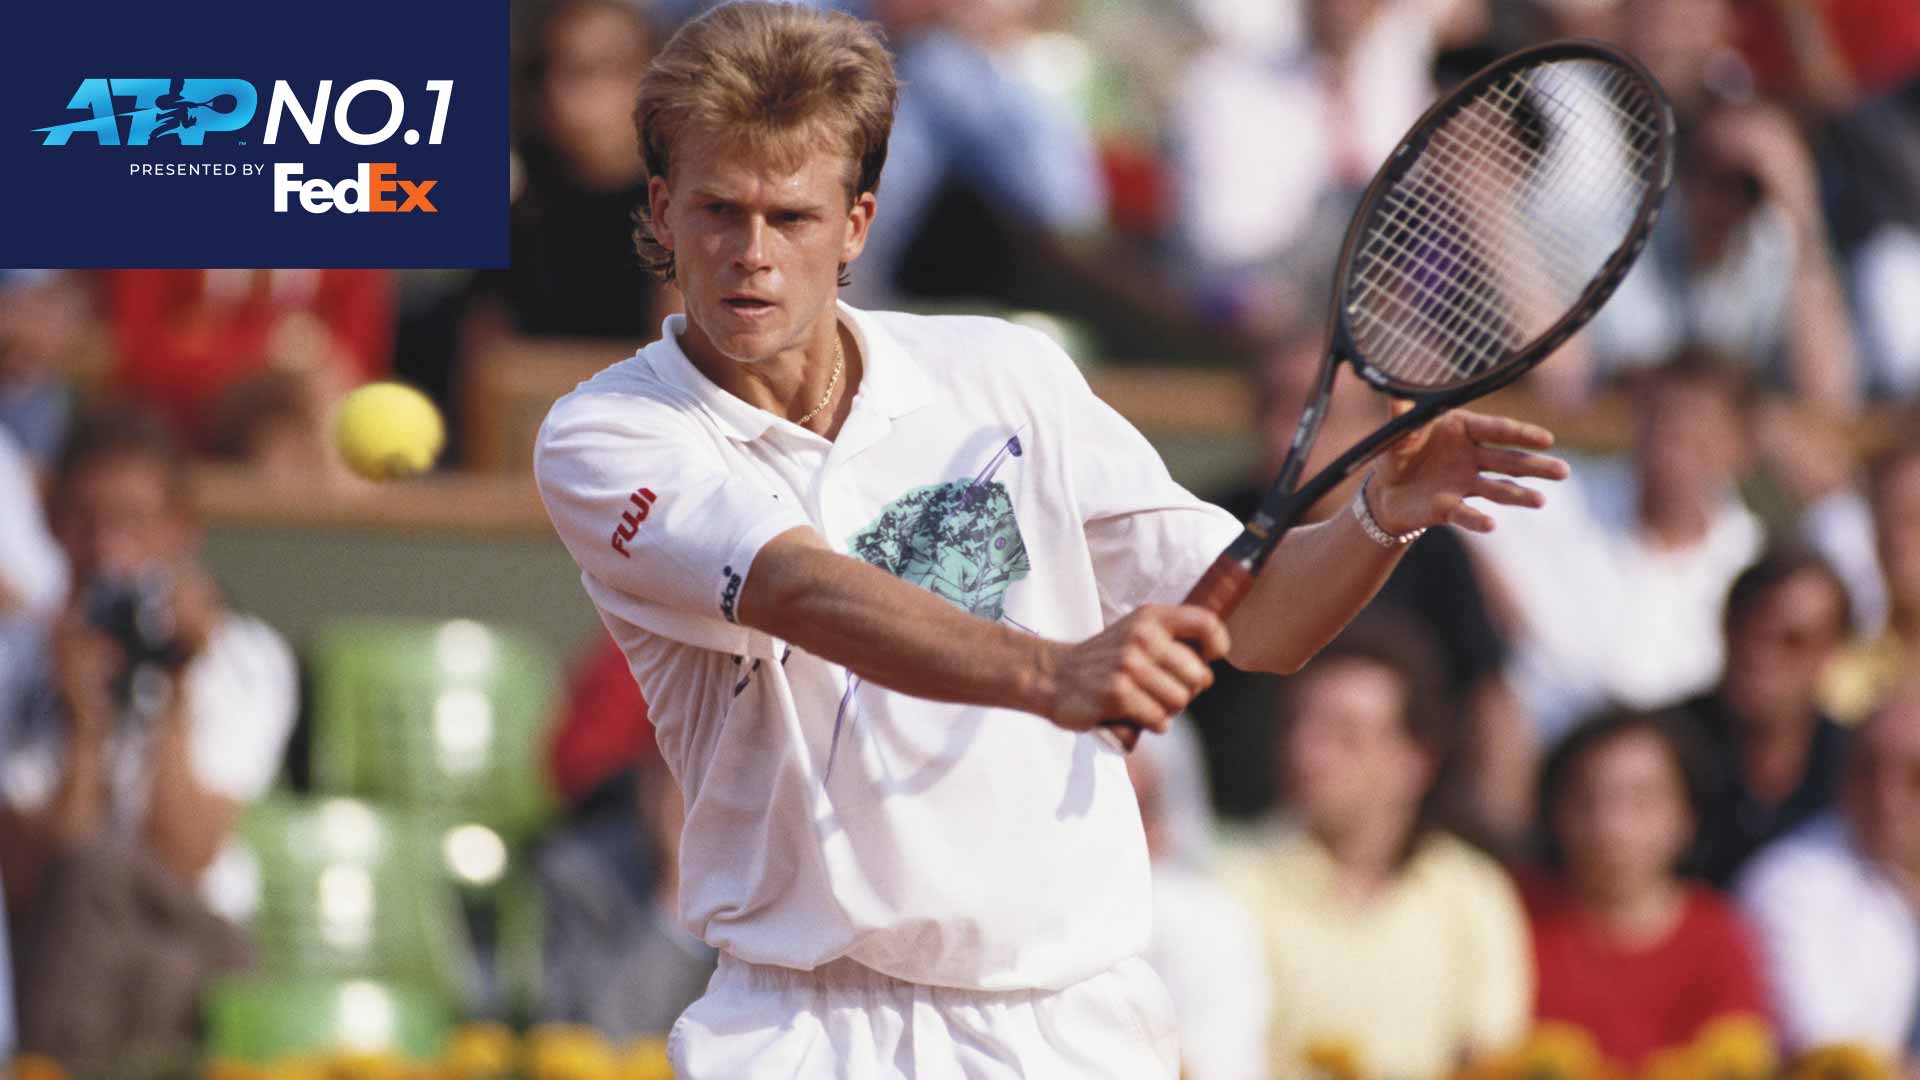 Stefan Edberg alcanzó por primera vez el No. 1 del FedEx Ranking ATP en 1990.